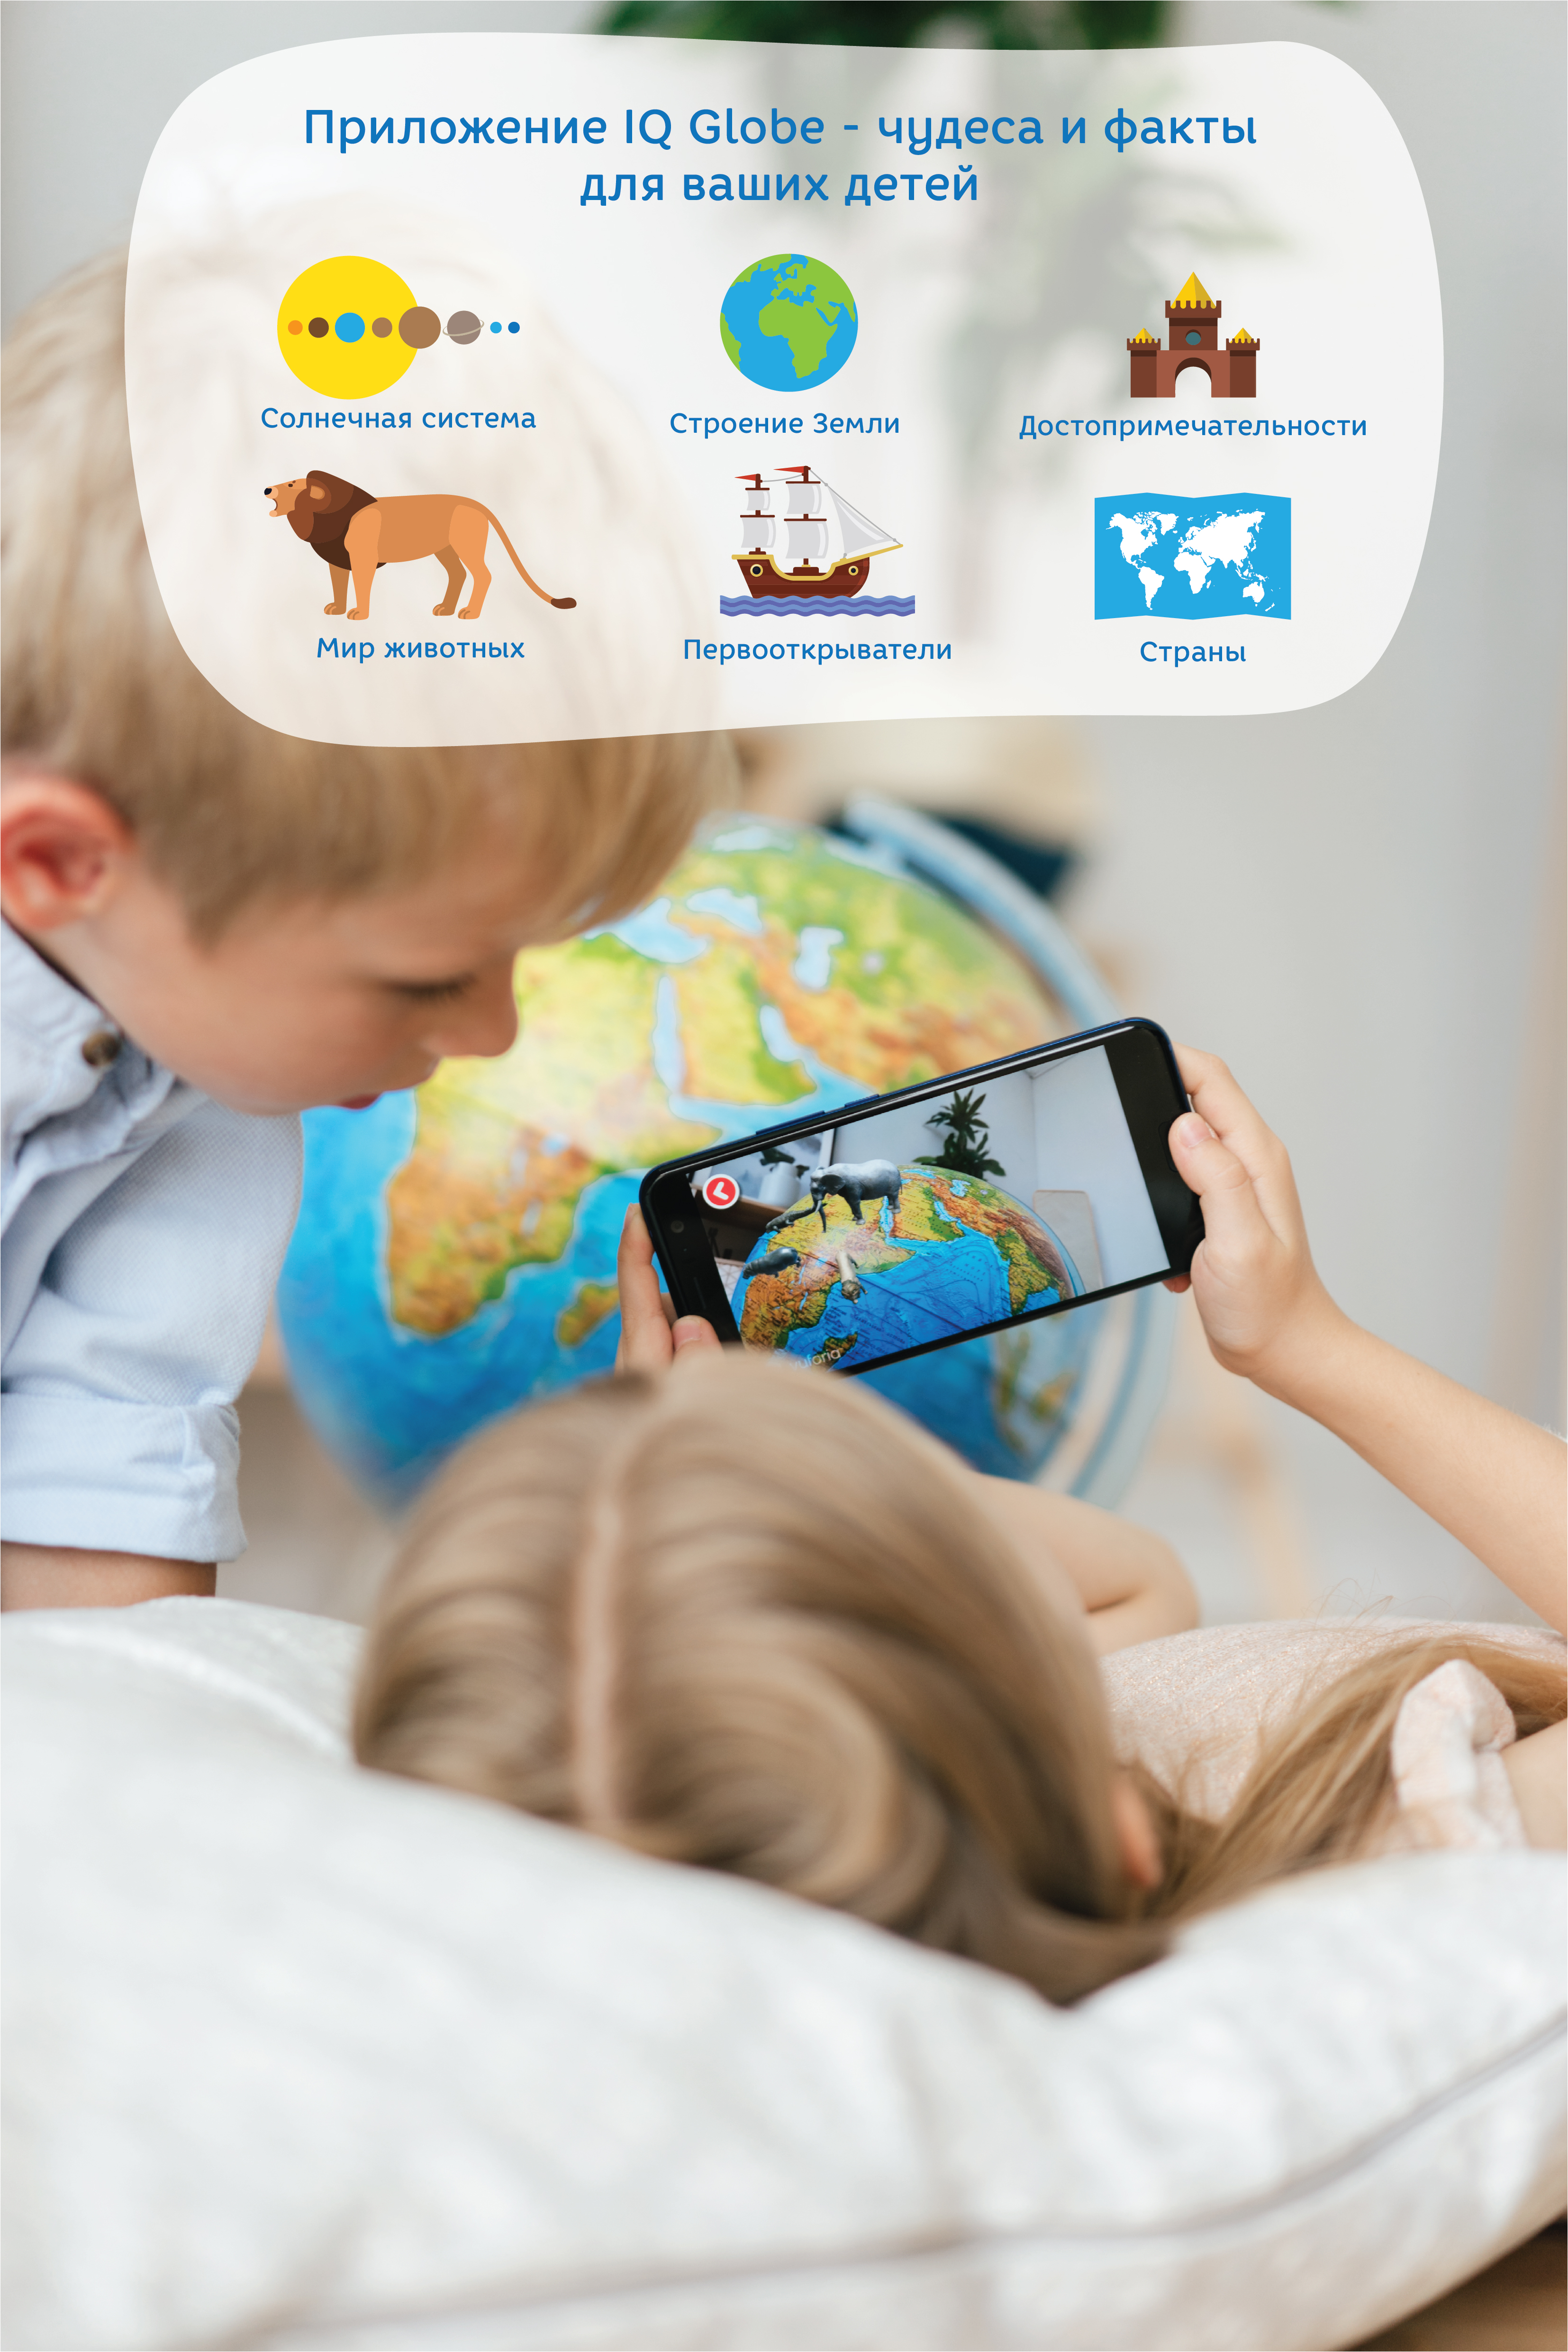 Глобусы Интерактивный глобус D-210 мм Зоогеографический (Детский) с  подсветкой Очки виртуальной реальности (VR) в комплекте.